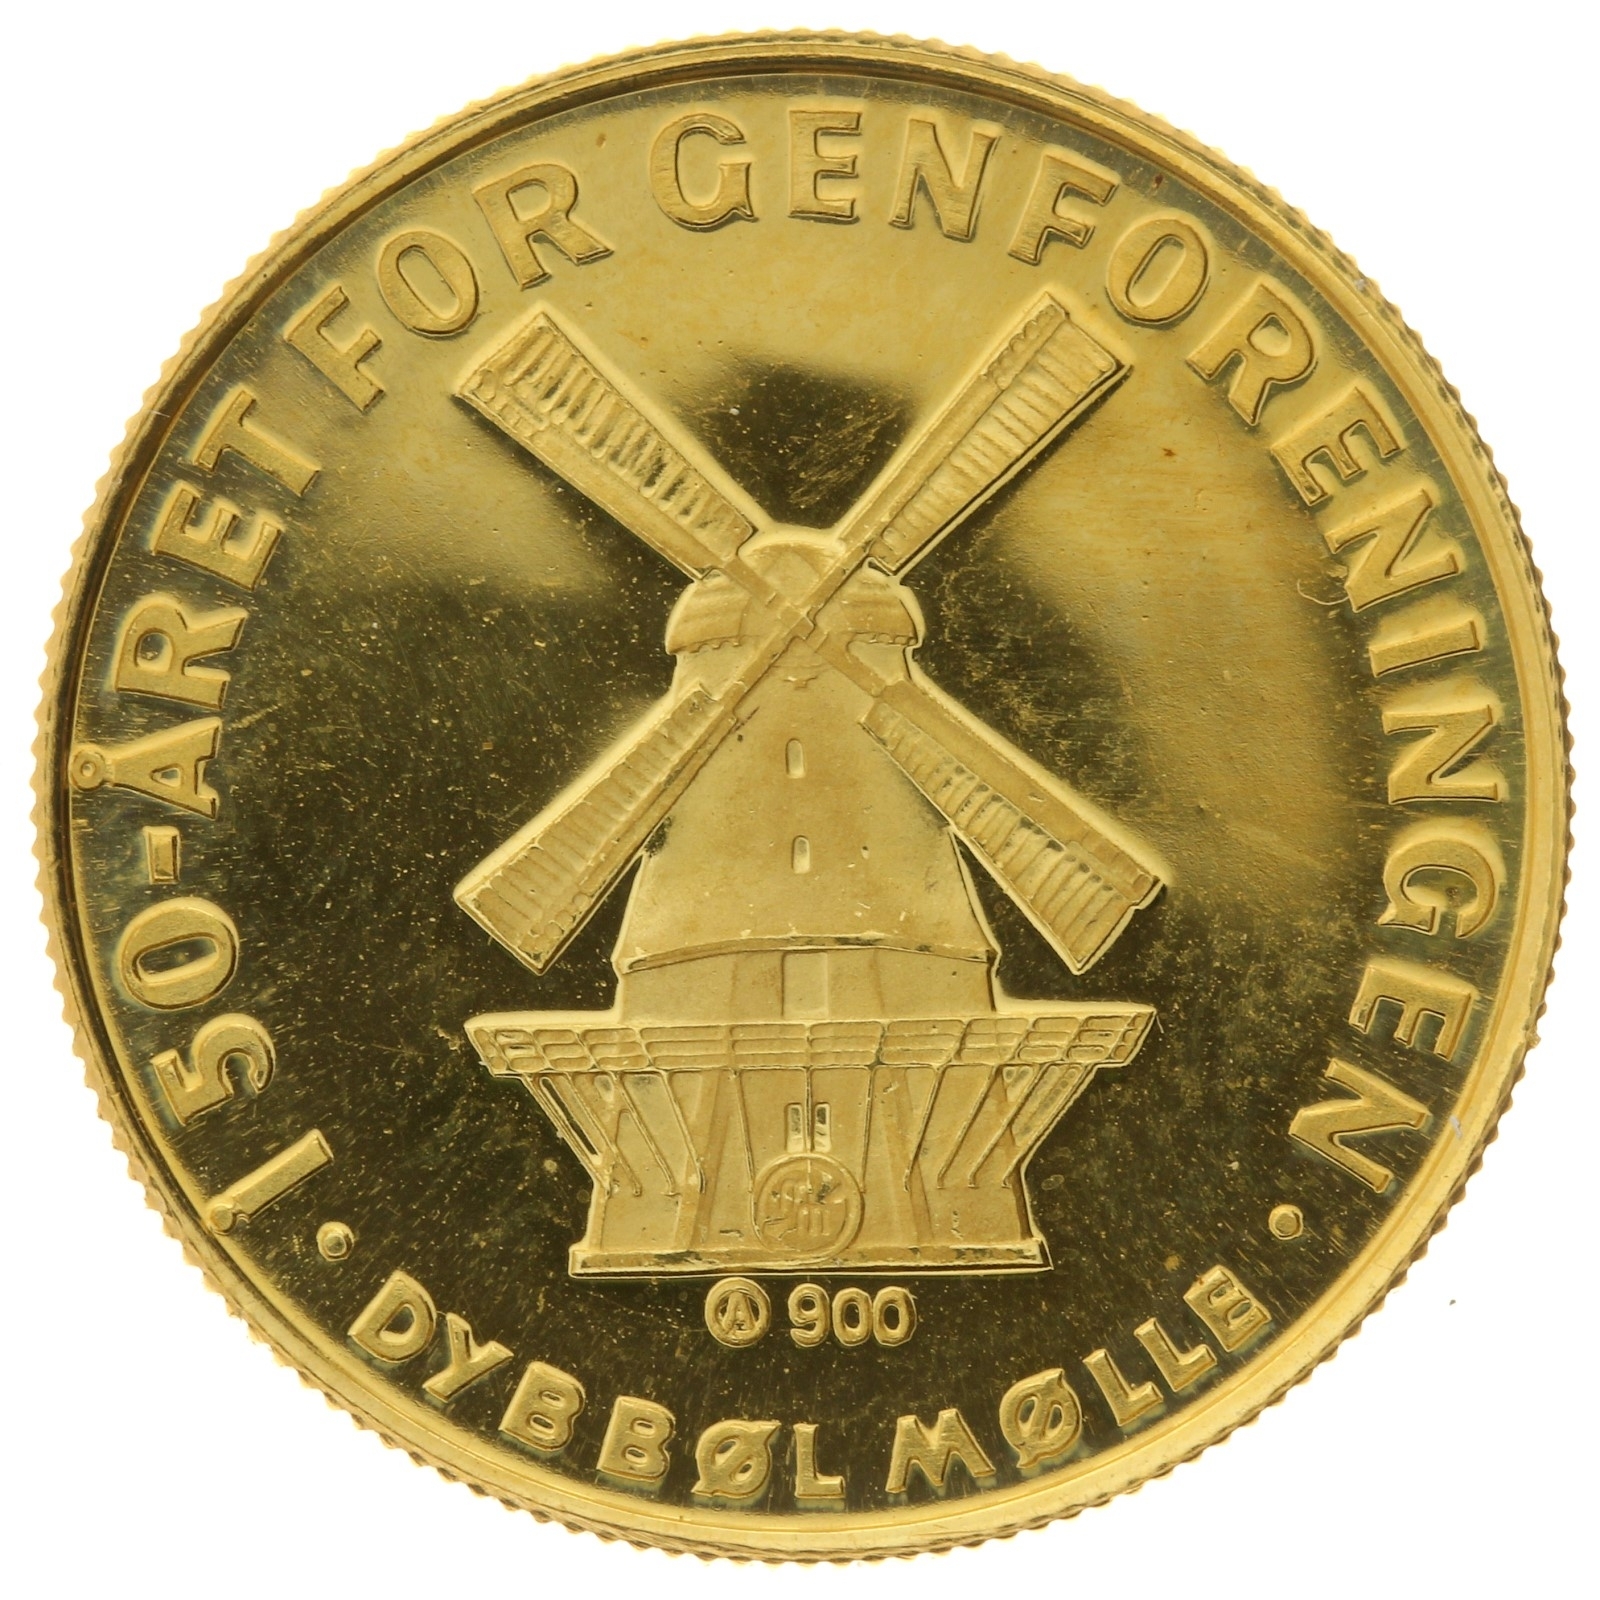 Denmark - Medal (1 ducat) - 1970 - 15th July 1920